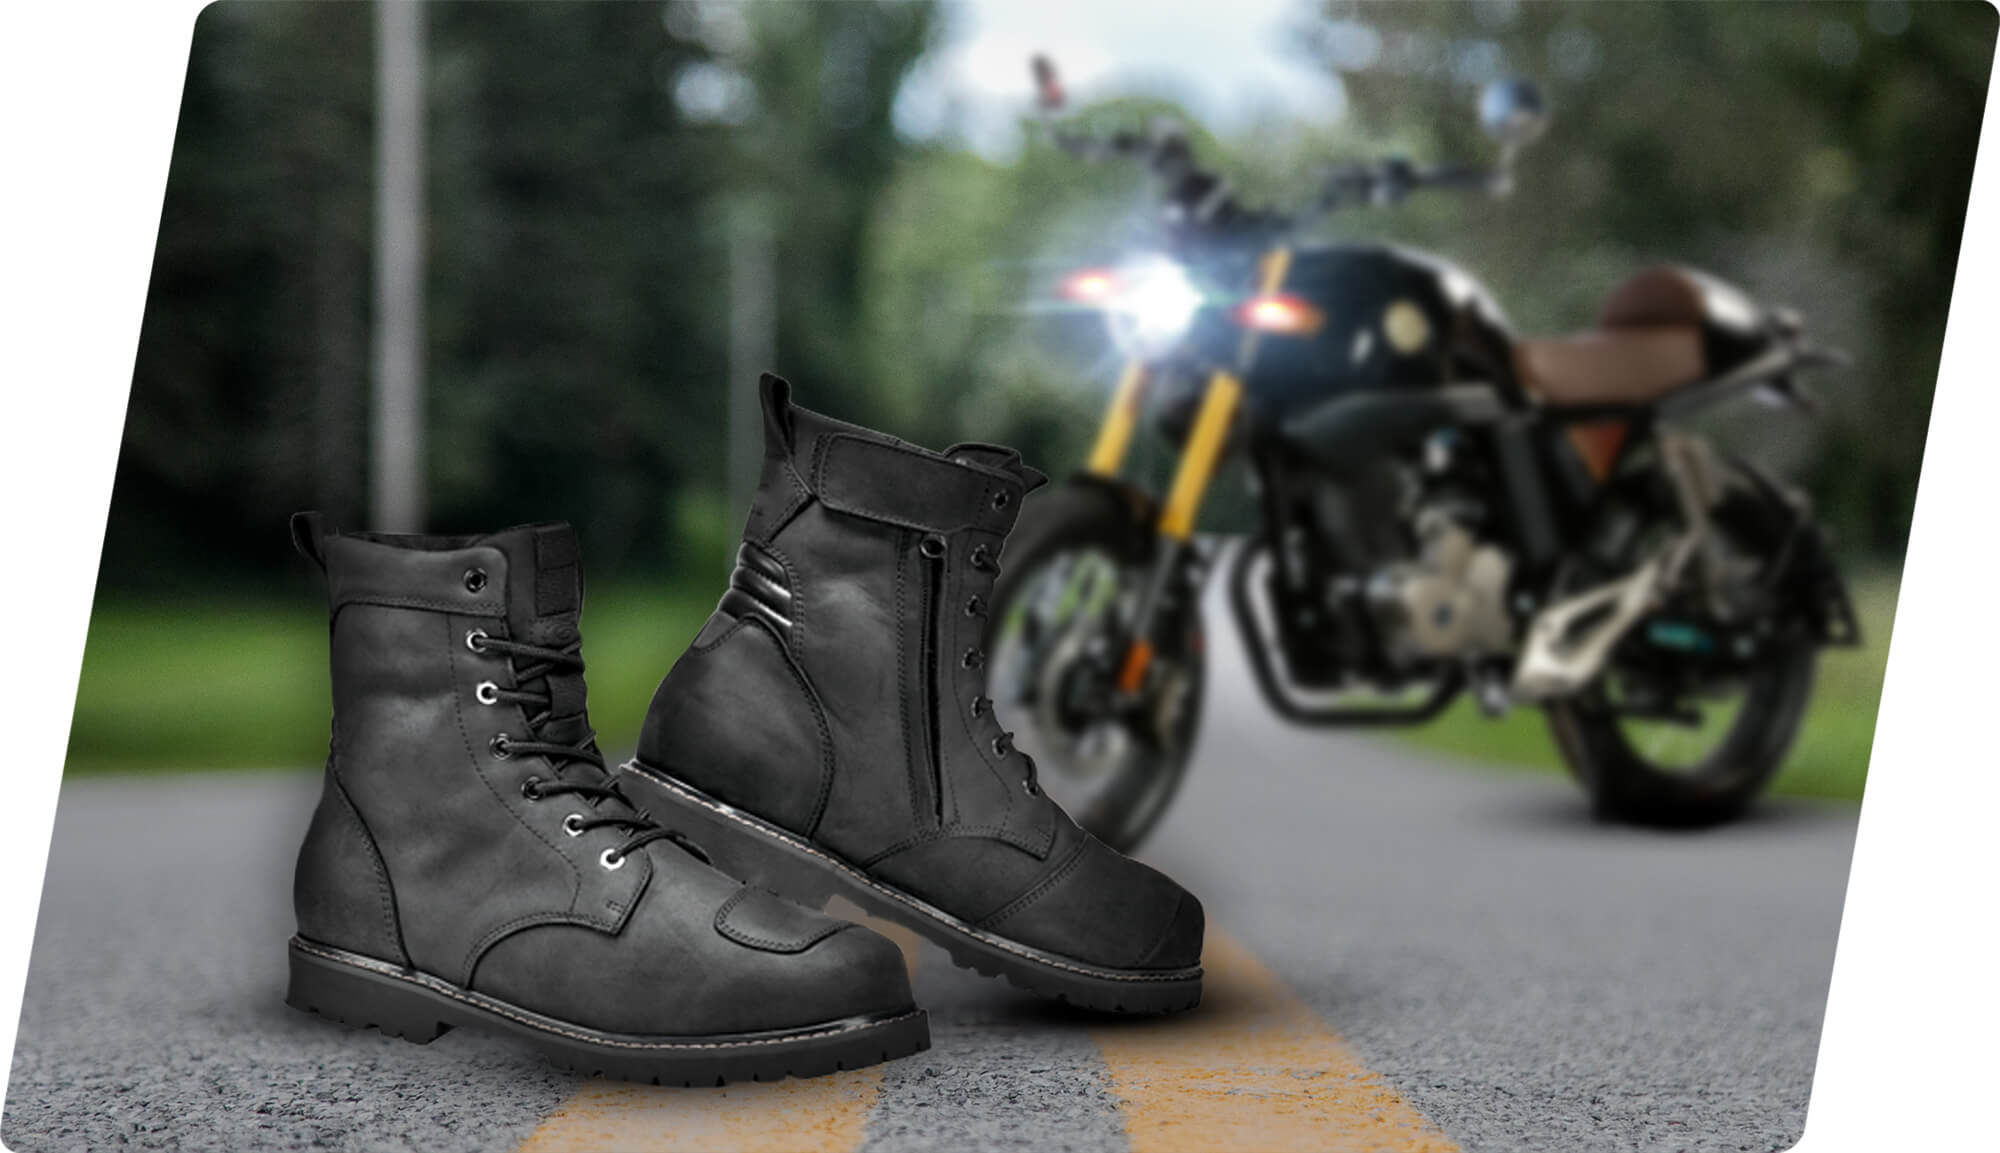 Chaise longue Múltiple envase Qué tipo de bota debería de usar con mi moto? – Vento Motorcycles U.S.A